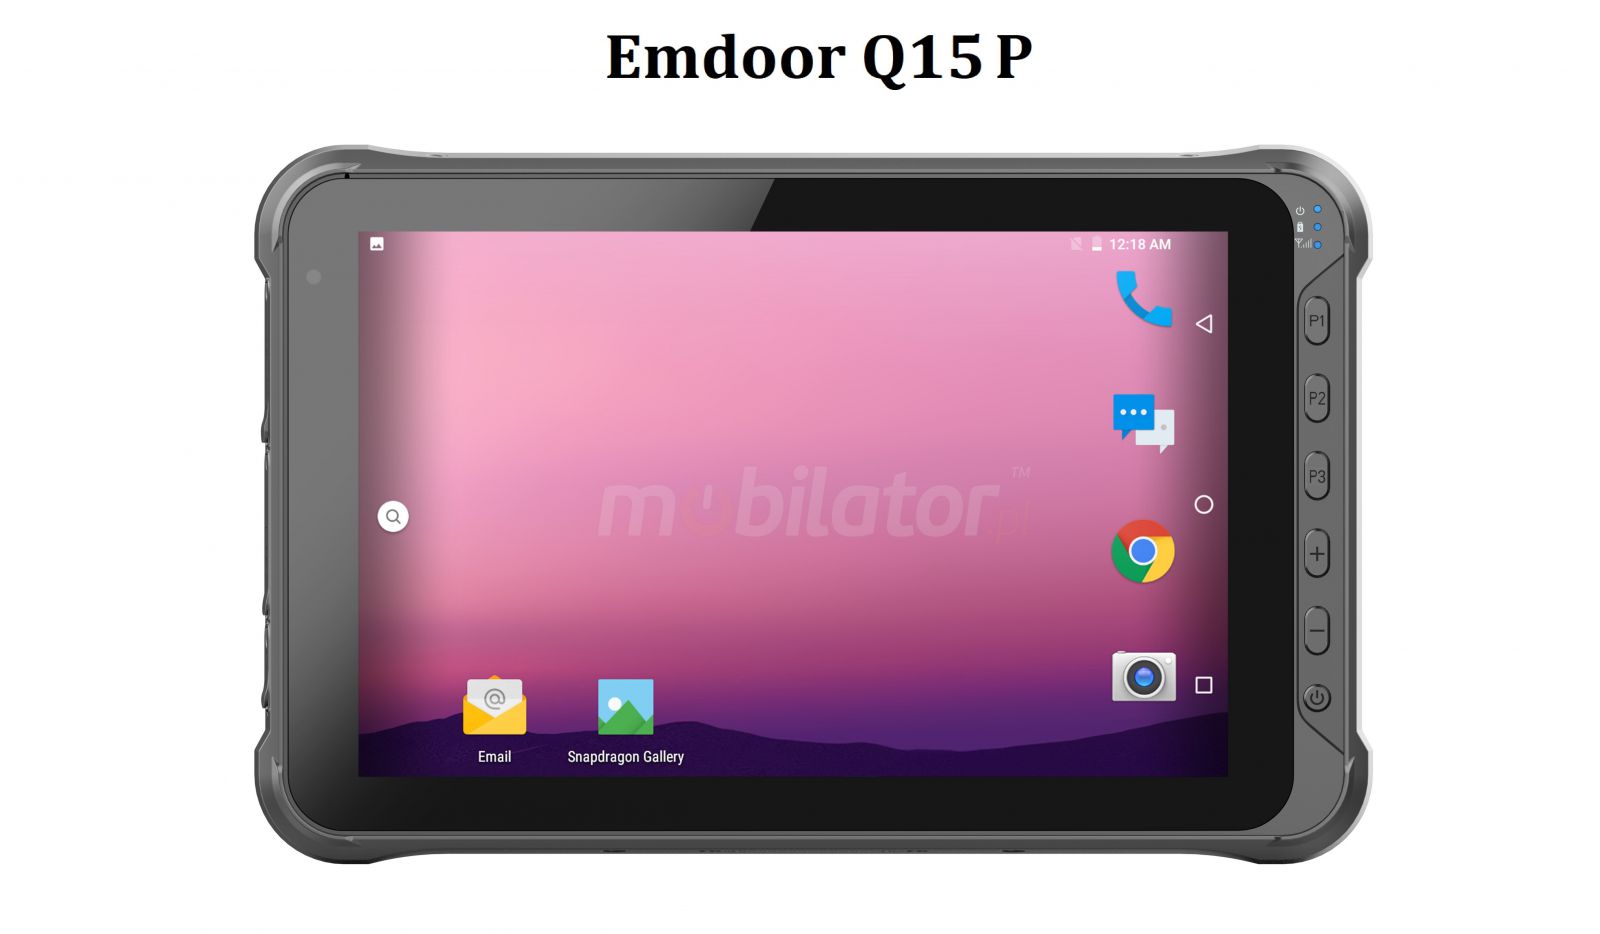 Emdoor Q15P v.5 - Odporny na upadki dziesiciocalowy tablet z Bluetooth 4.1, 4G, 4GB RAM pamici, czytnikiem kodw 2D N3680 Honeywell, dyskiem 64GB i skanerem UHF